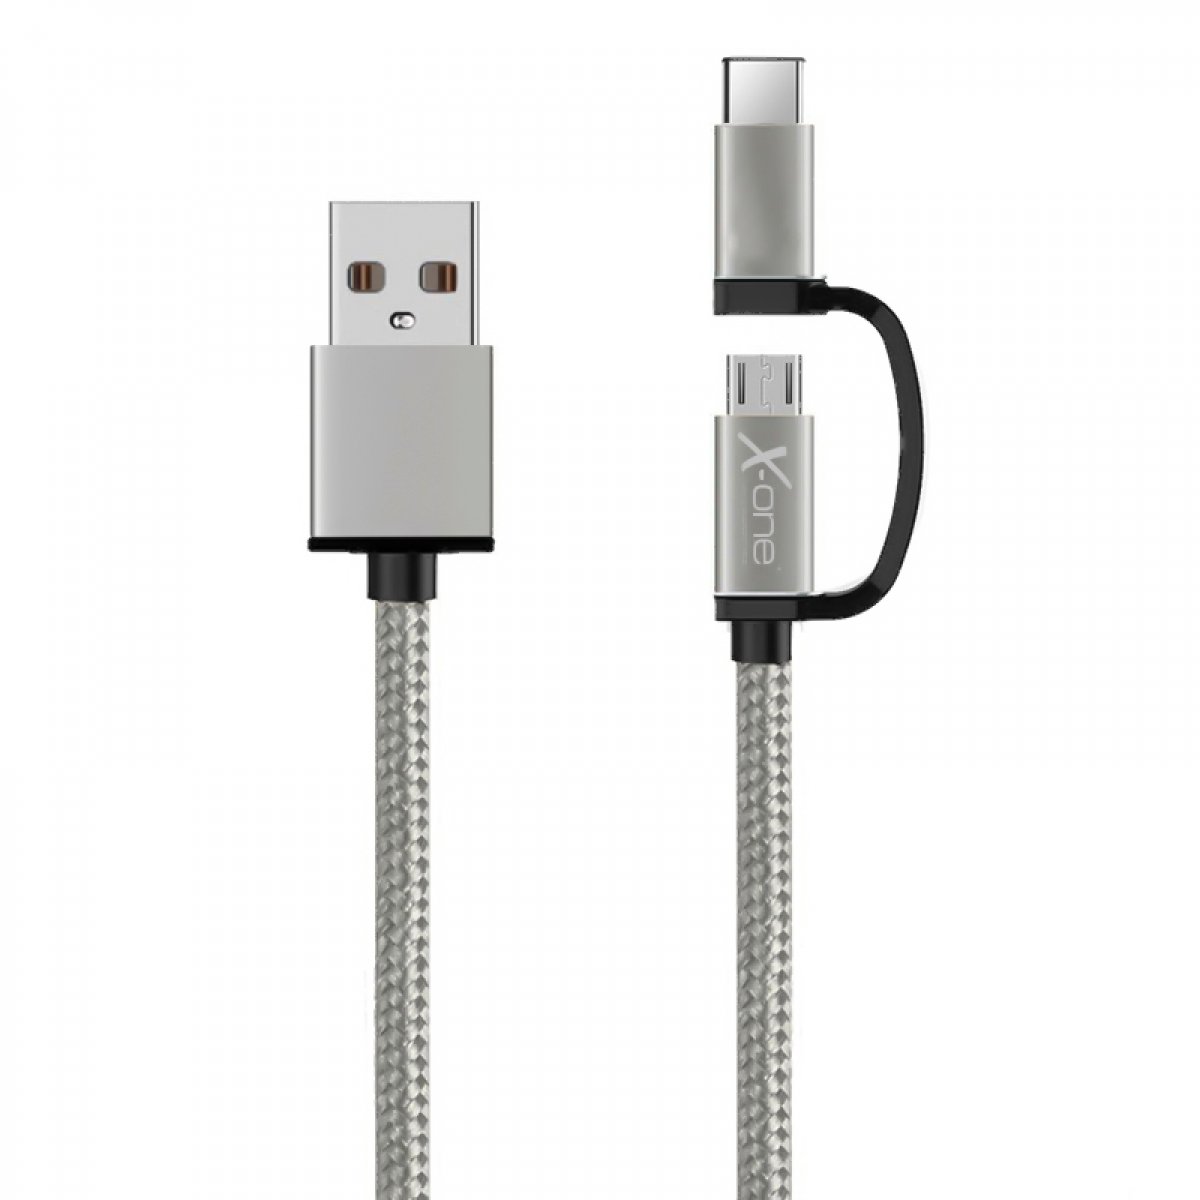 CABLE USB A/M - MICRO USB A/M + USB C/M (1M) X-ONE